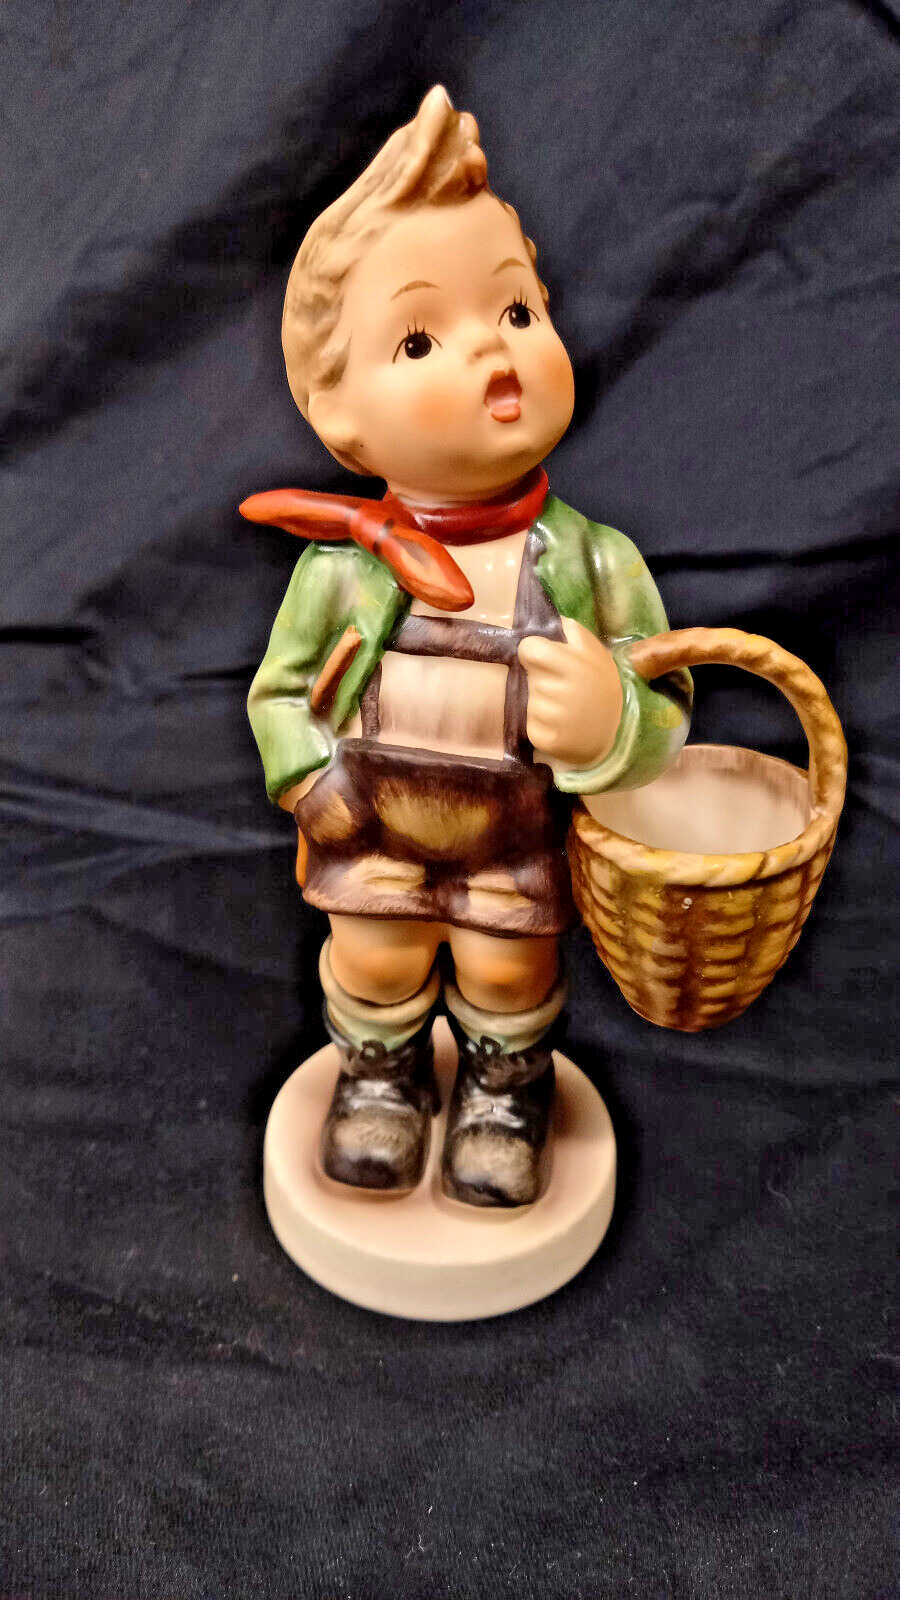 Vintage Goebel Hummel Figurine - Village Boy - 51 West Germany